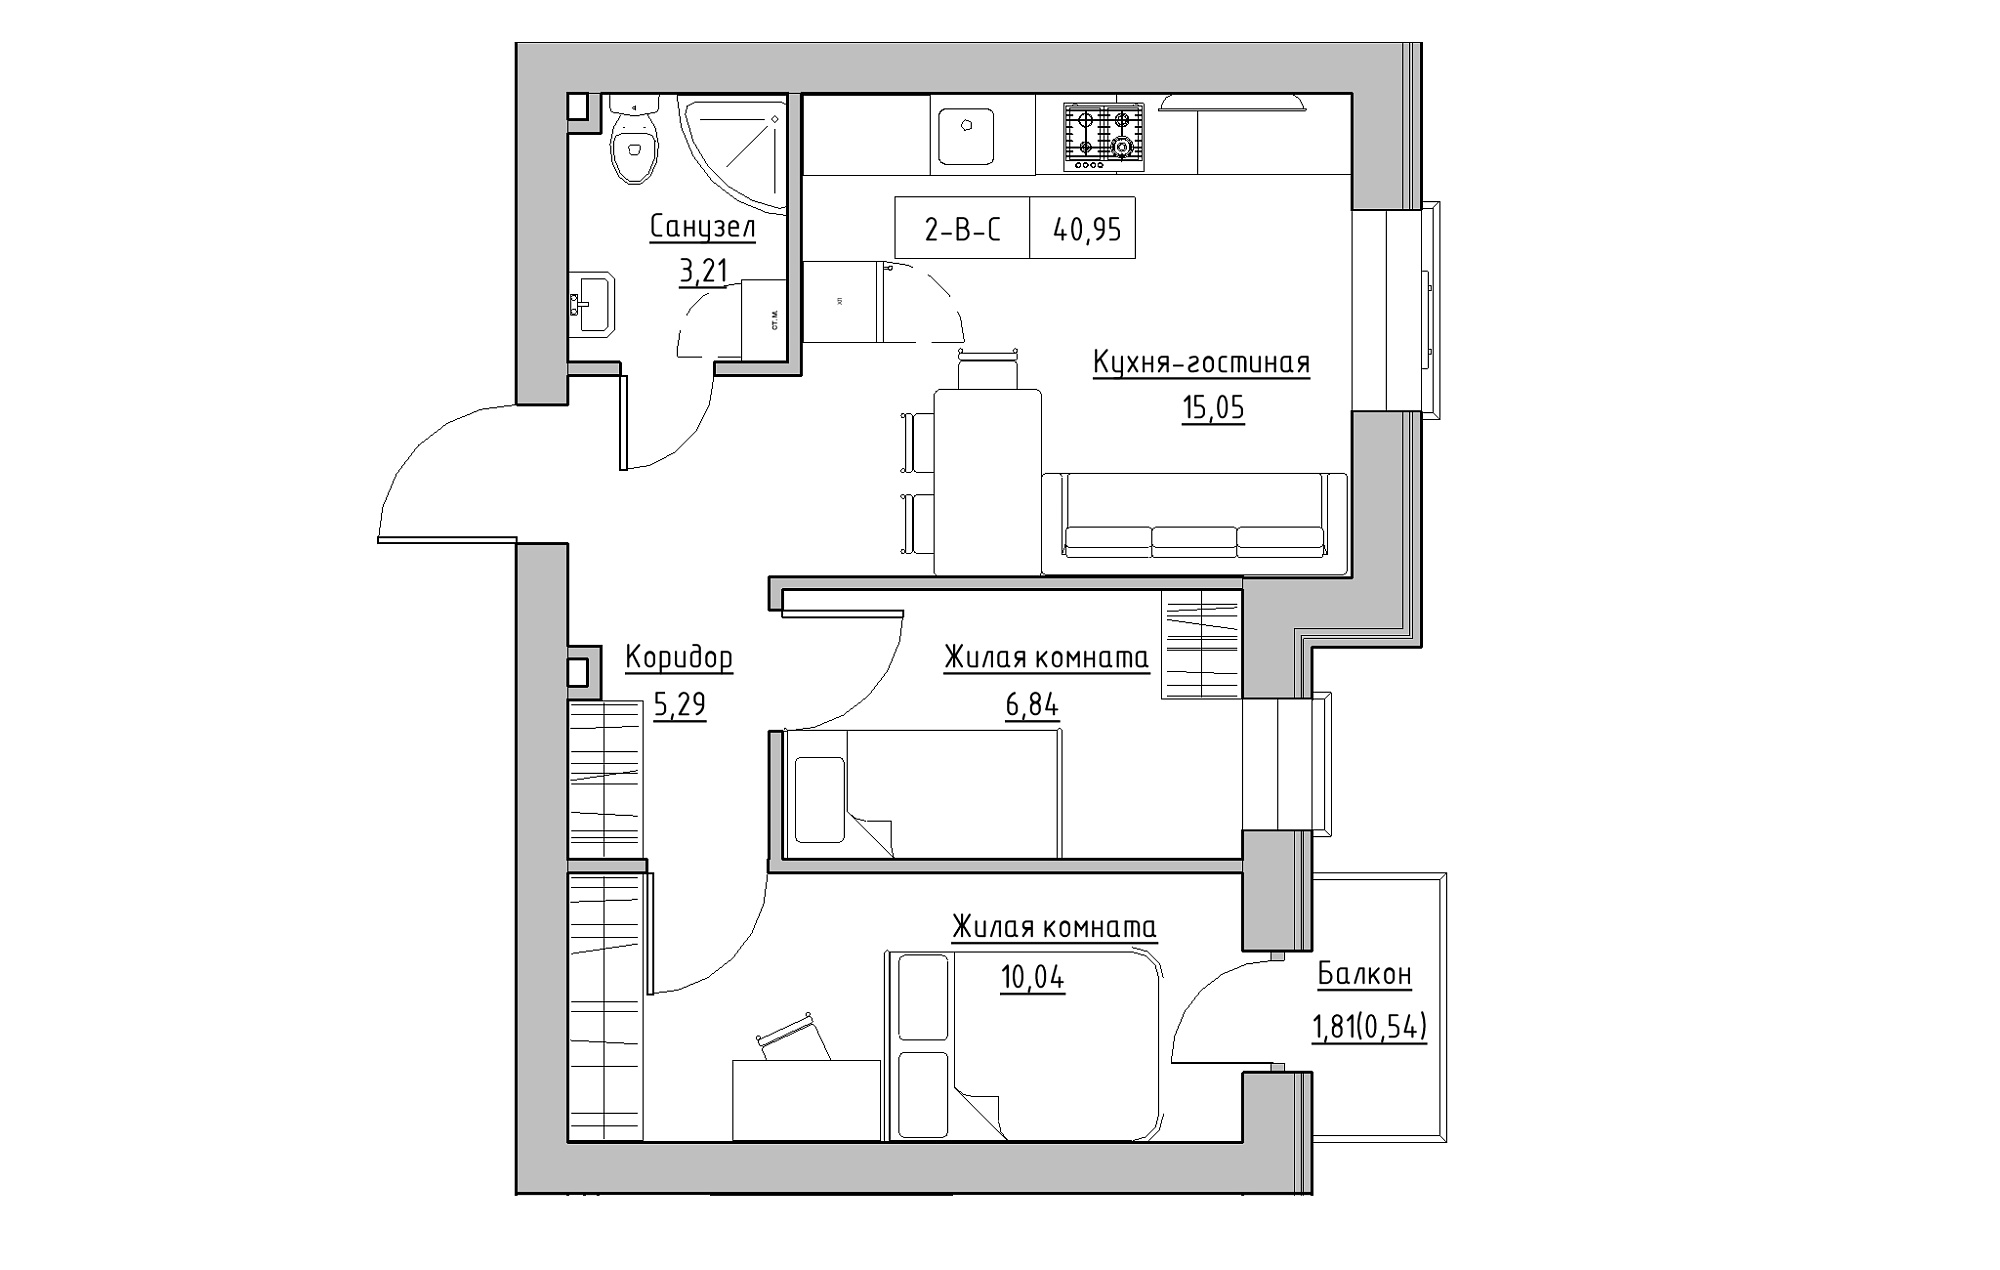 Планування 2-к квартира площею 40.95м2, KS-018-03/0010.